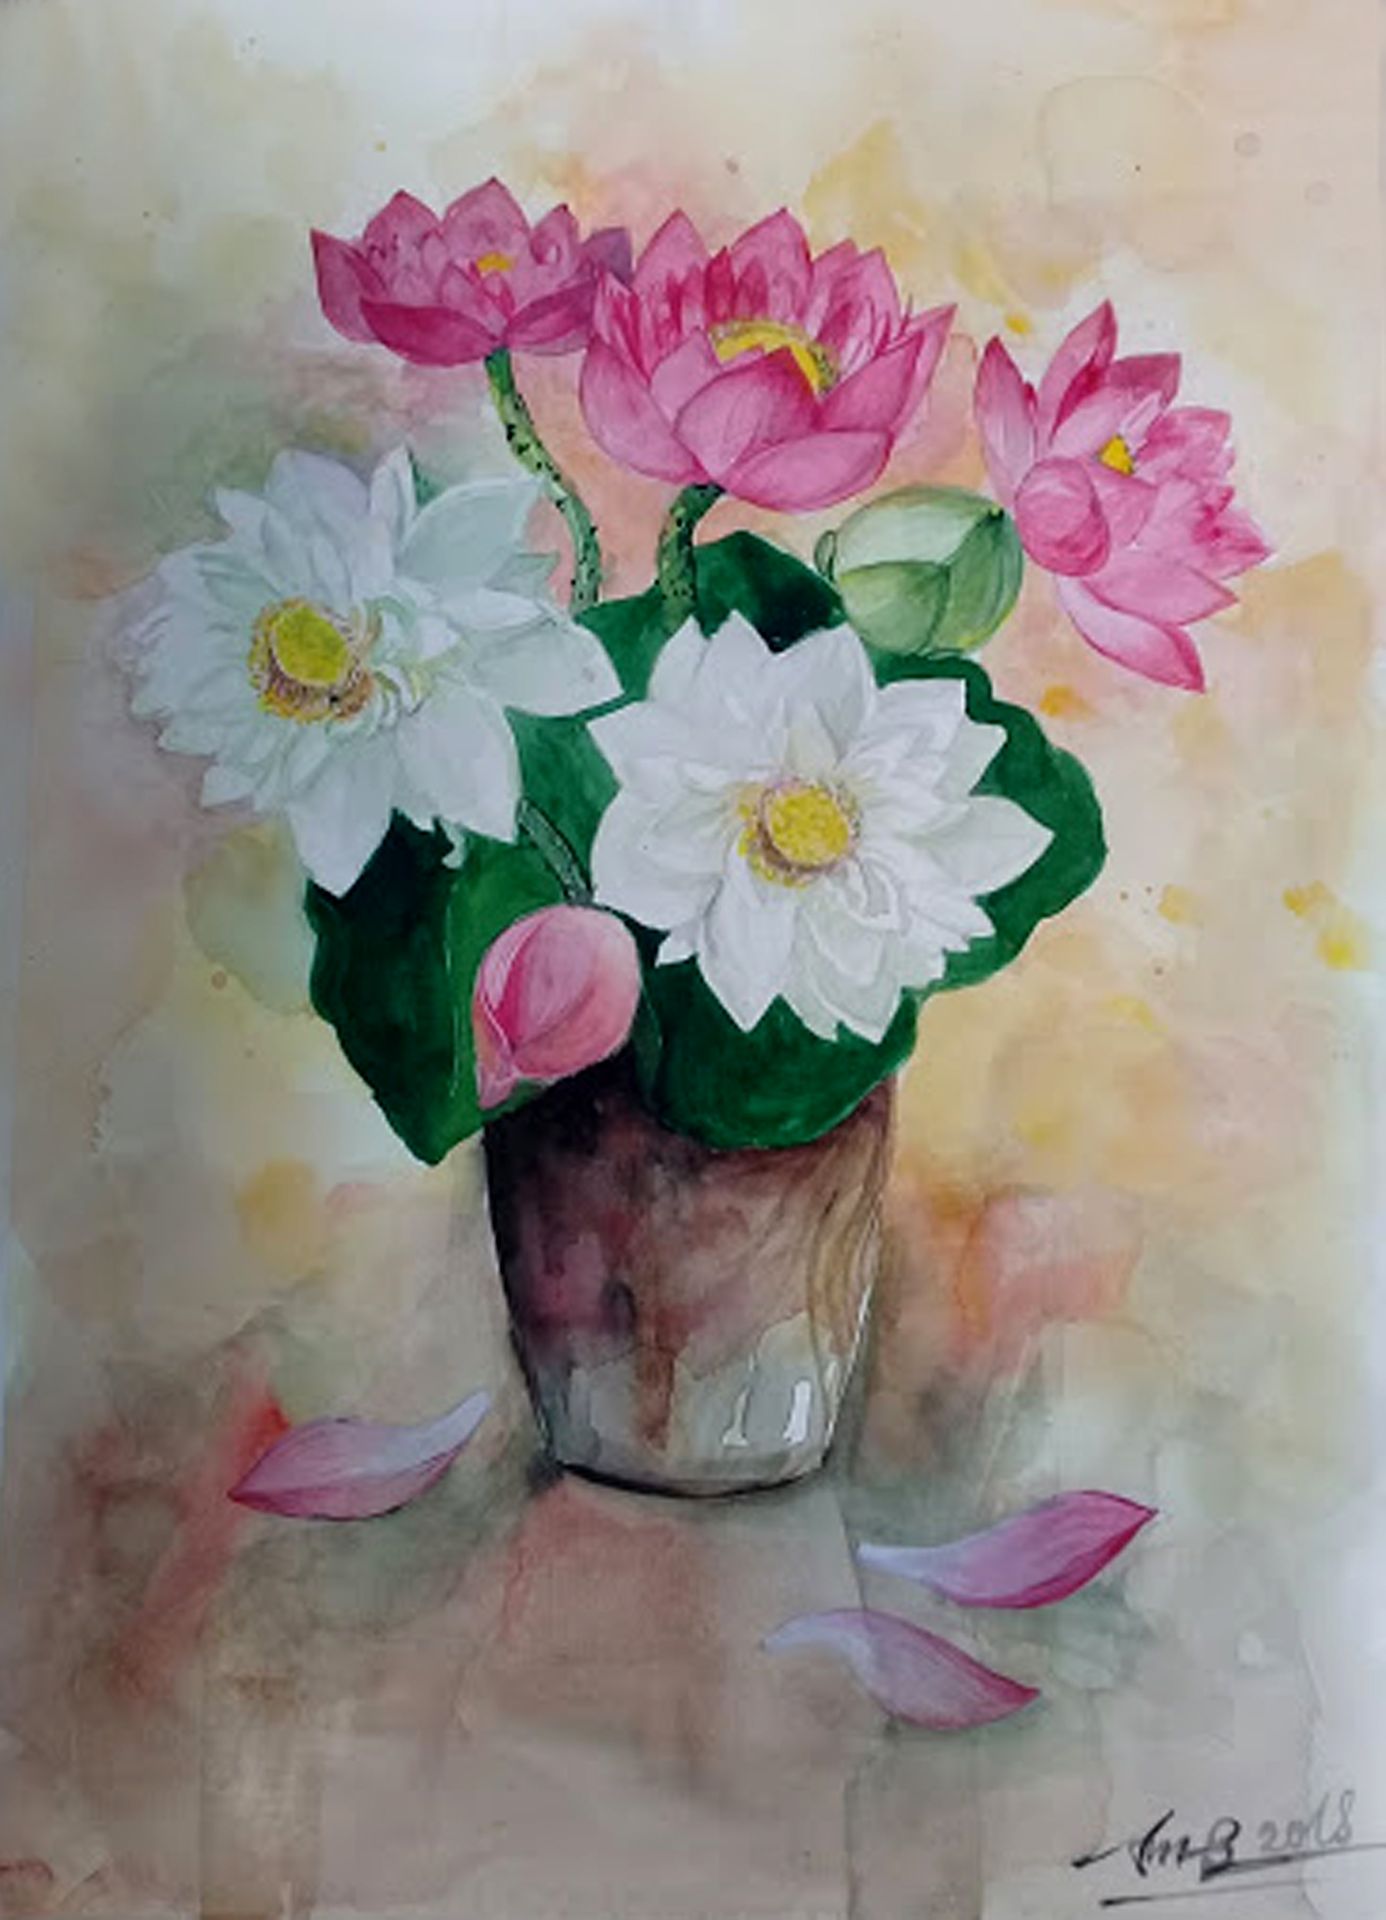 Vẽ tĩnh vật hoa sen là một nghệ thuật đẹp và thanh thoát. Với cách vẽ tĩnh vật hoa sen độc đáo và tinh tế, bạn sẽ tạo được những bức tranh độc đáo và trang nhã. Xem ngay hình ảnh liên quan để khám phá cách vẽ tĩnh vật hoa sen đầy sáng tạo.